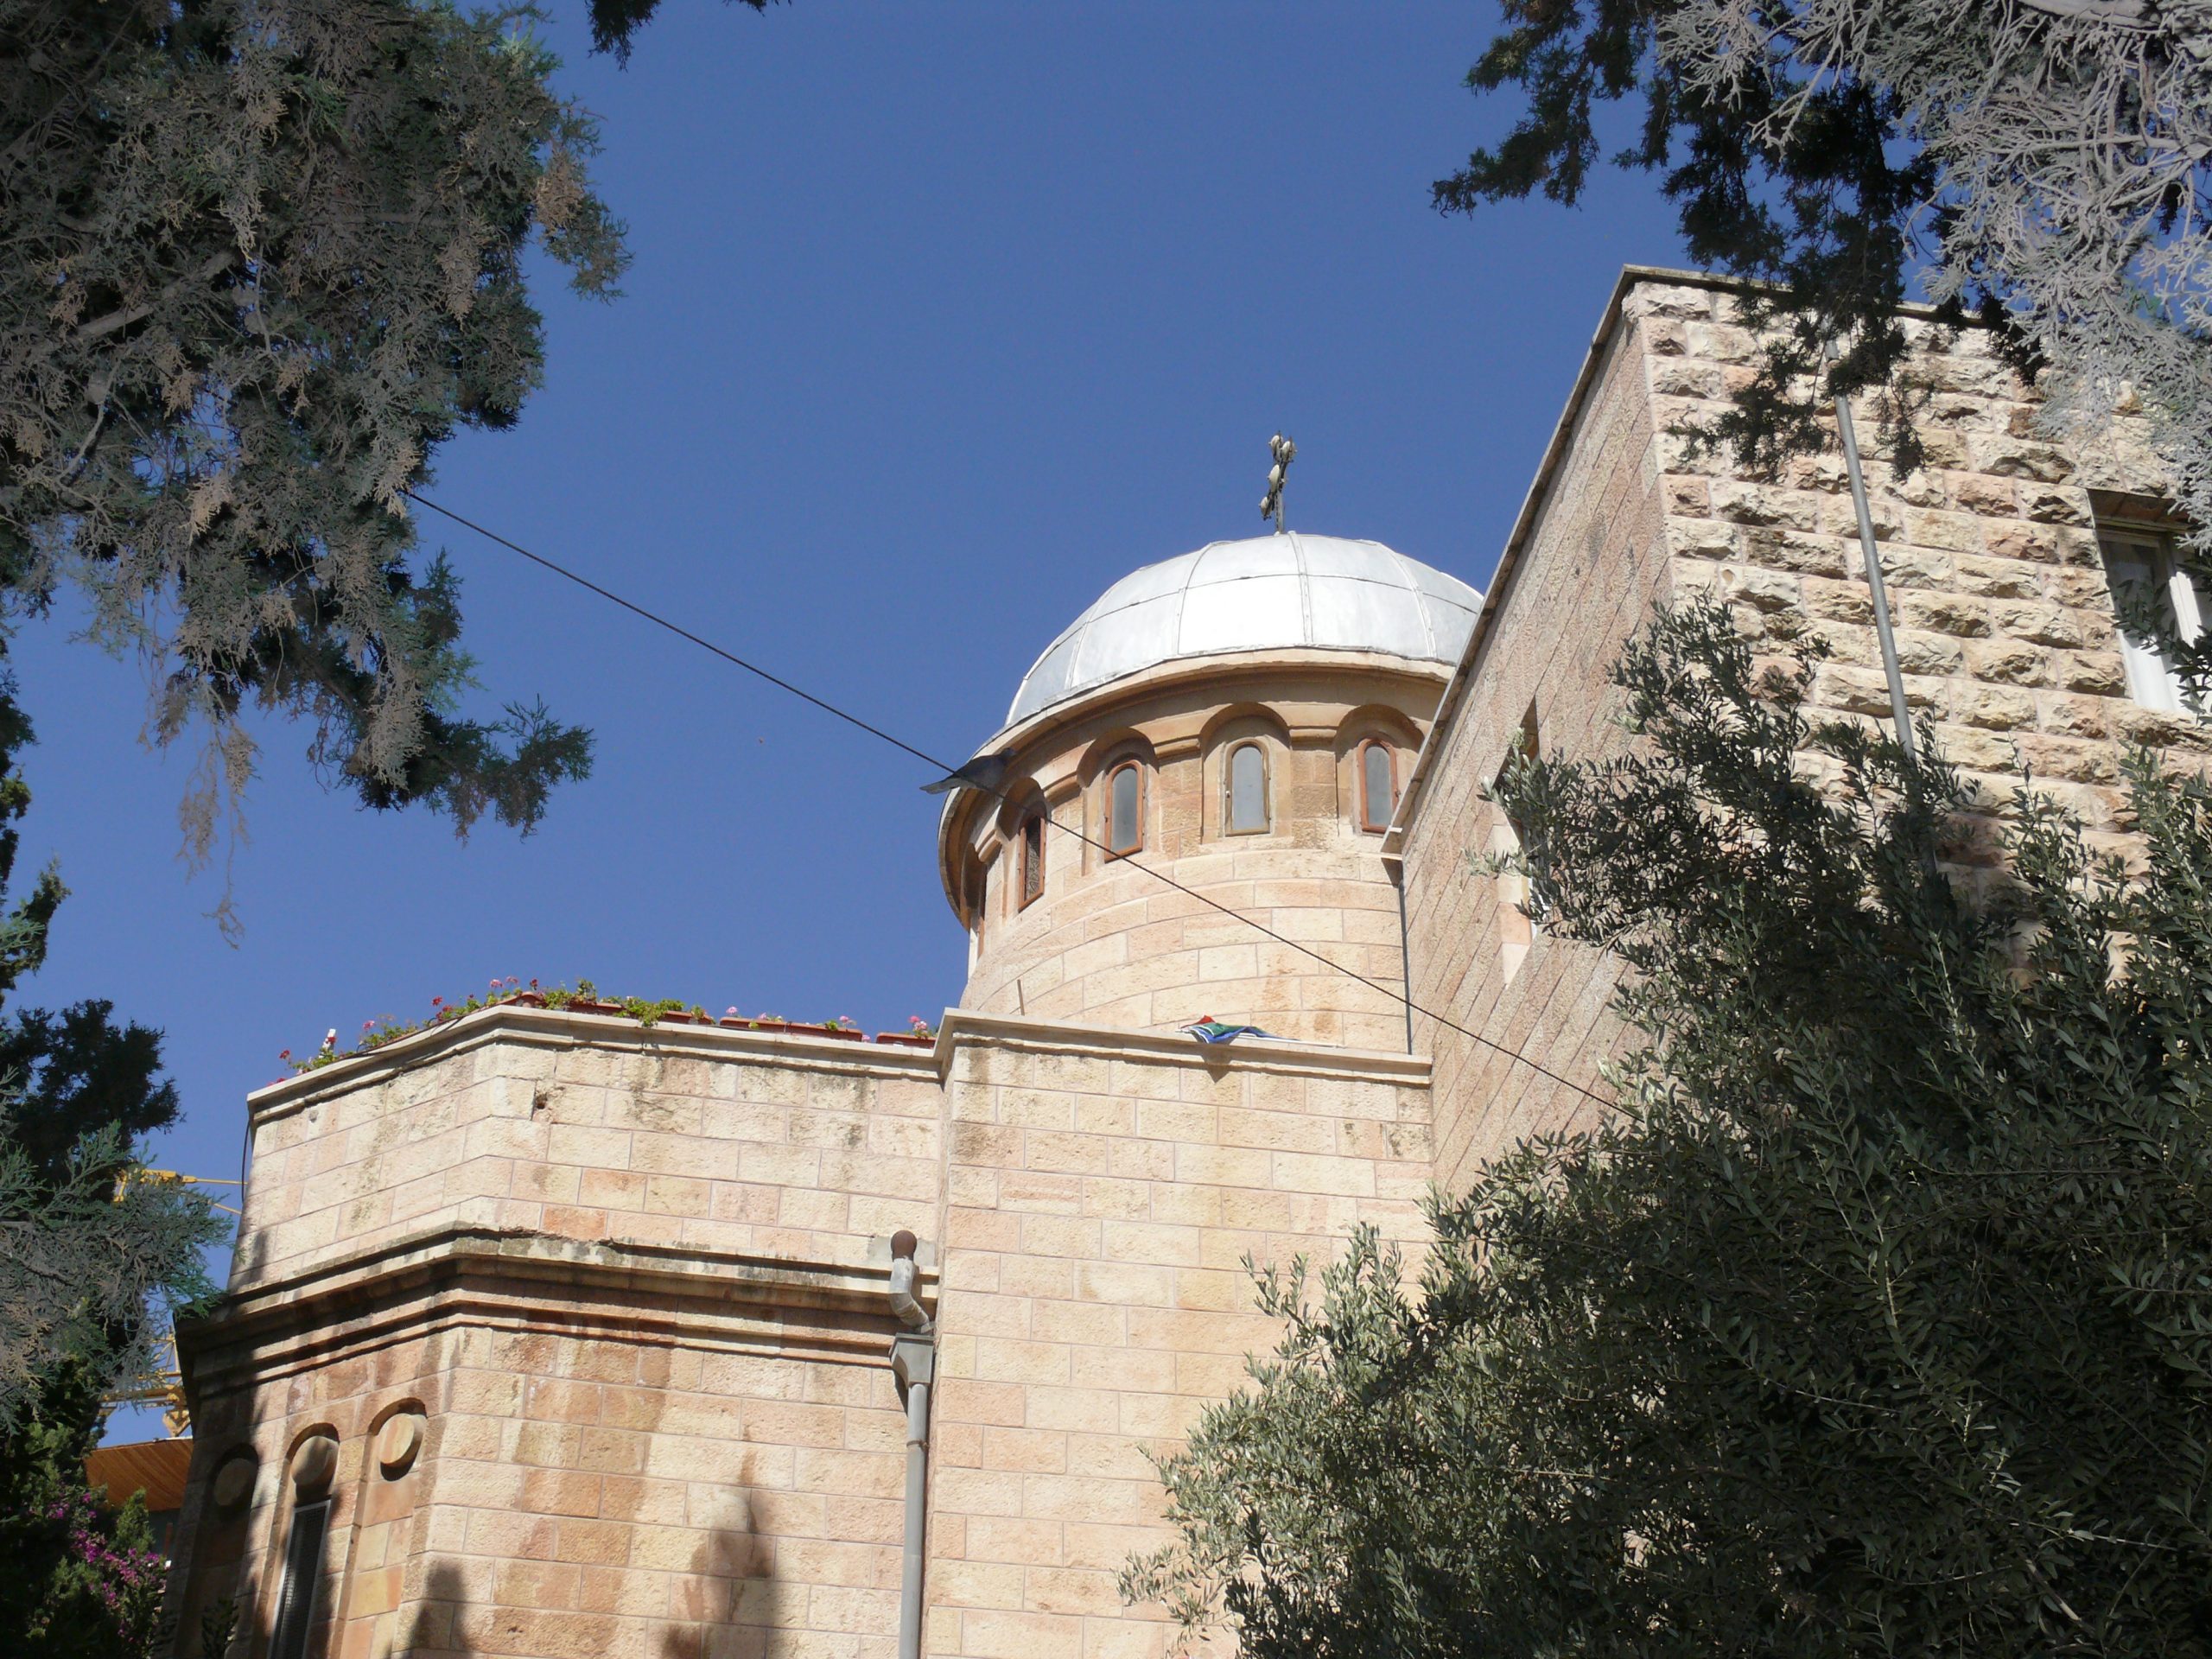 Le patriarche de jérusalem condamne l’attaque commise contre l’église roumaine par un extrémiste